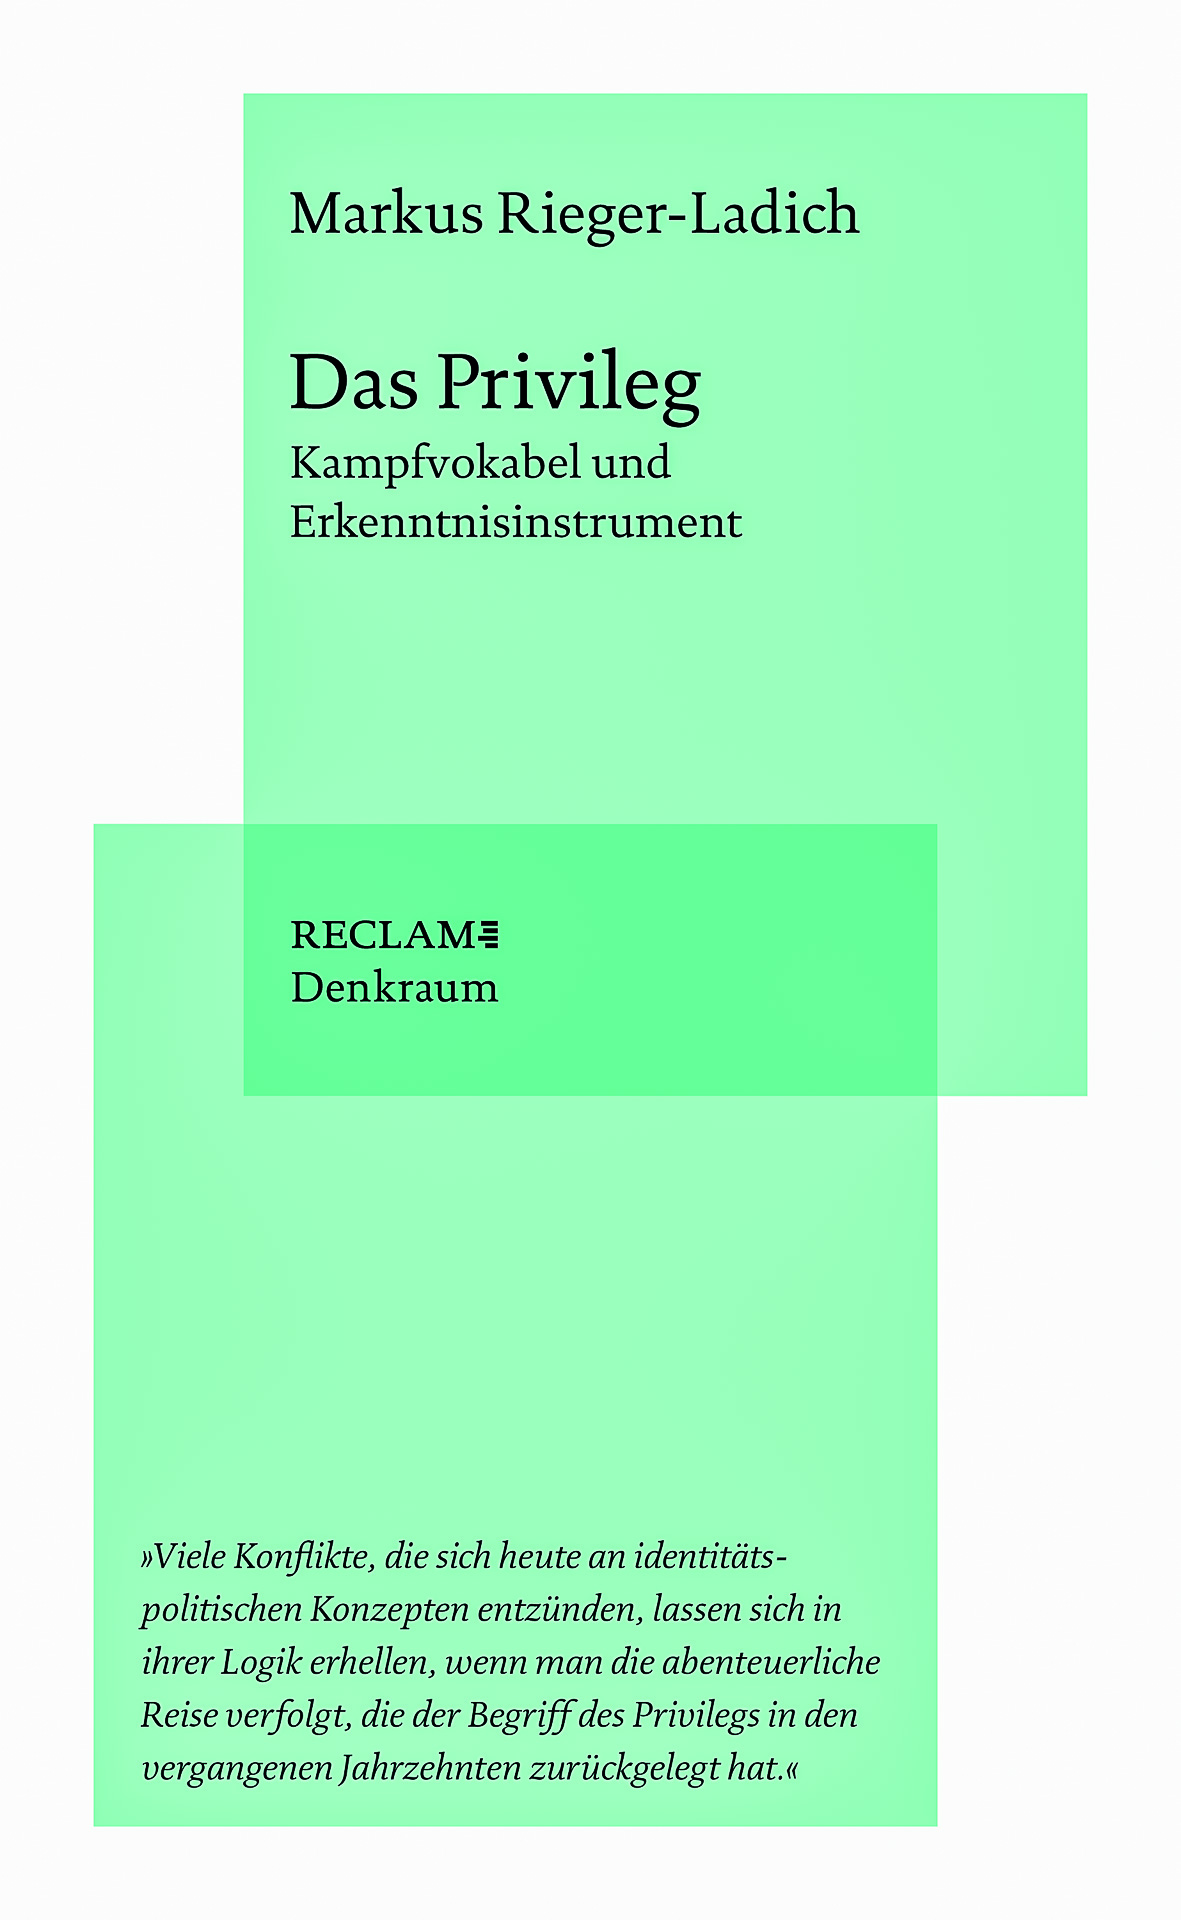 Buchcover von "Das Privileg" von Markus Rieger-Ladich, erschienen im Reclam Verlag, 2022